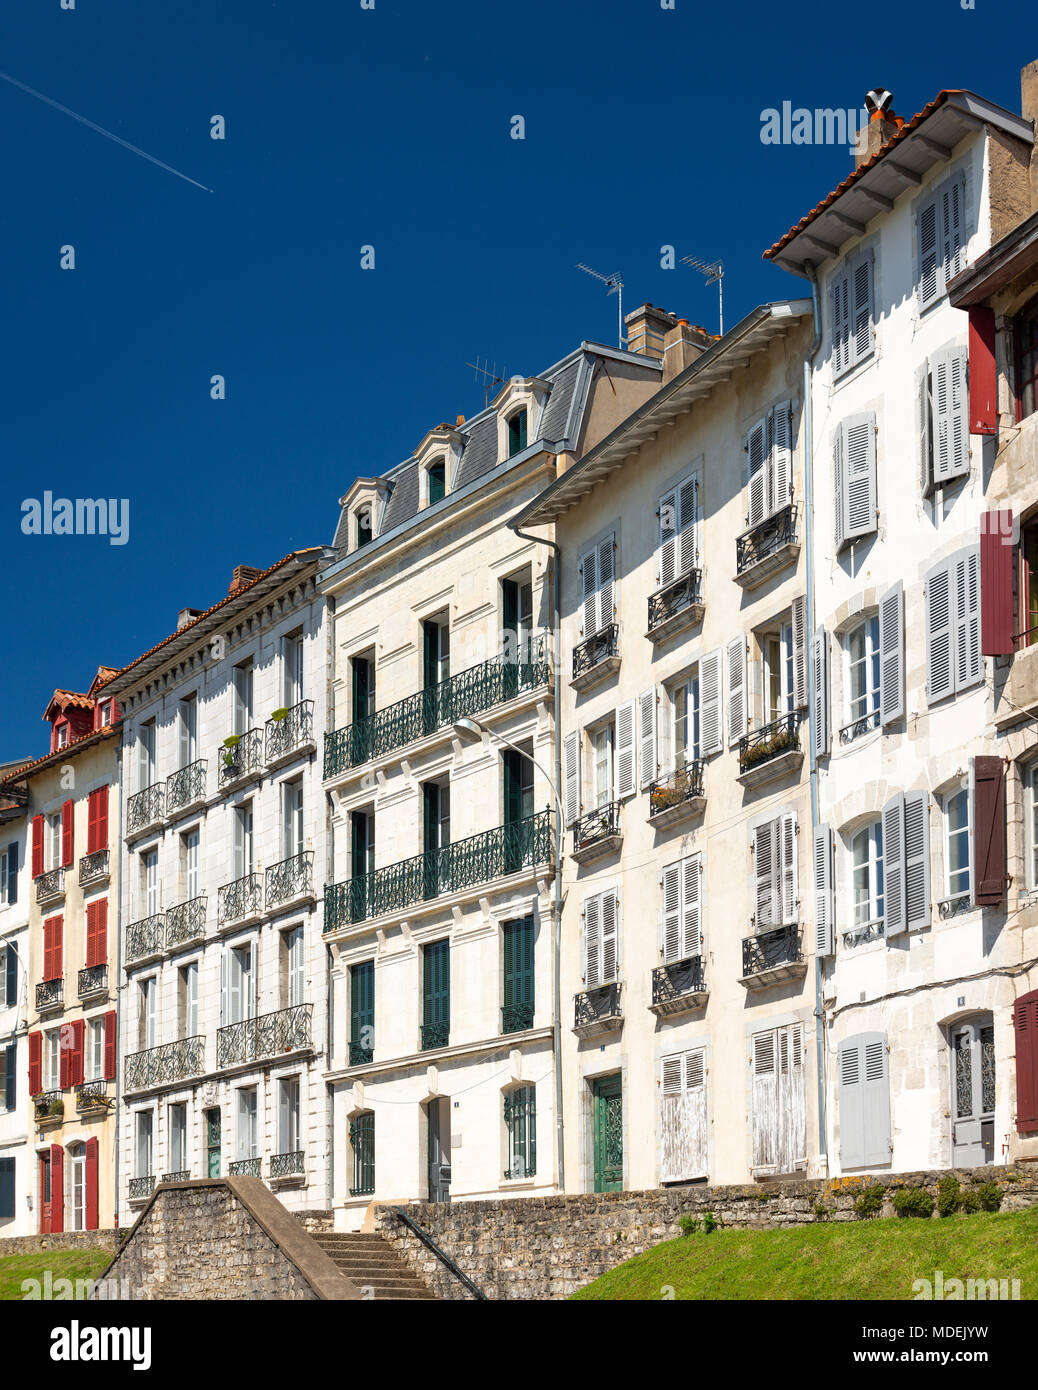 Maisons de plain-pied typique du Grand Bayonne (Bayonne - Pyrénées Atlantiques - Aquitaine - France). Maisons à étages typiques du Grand Bayonne. Banque D'Images